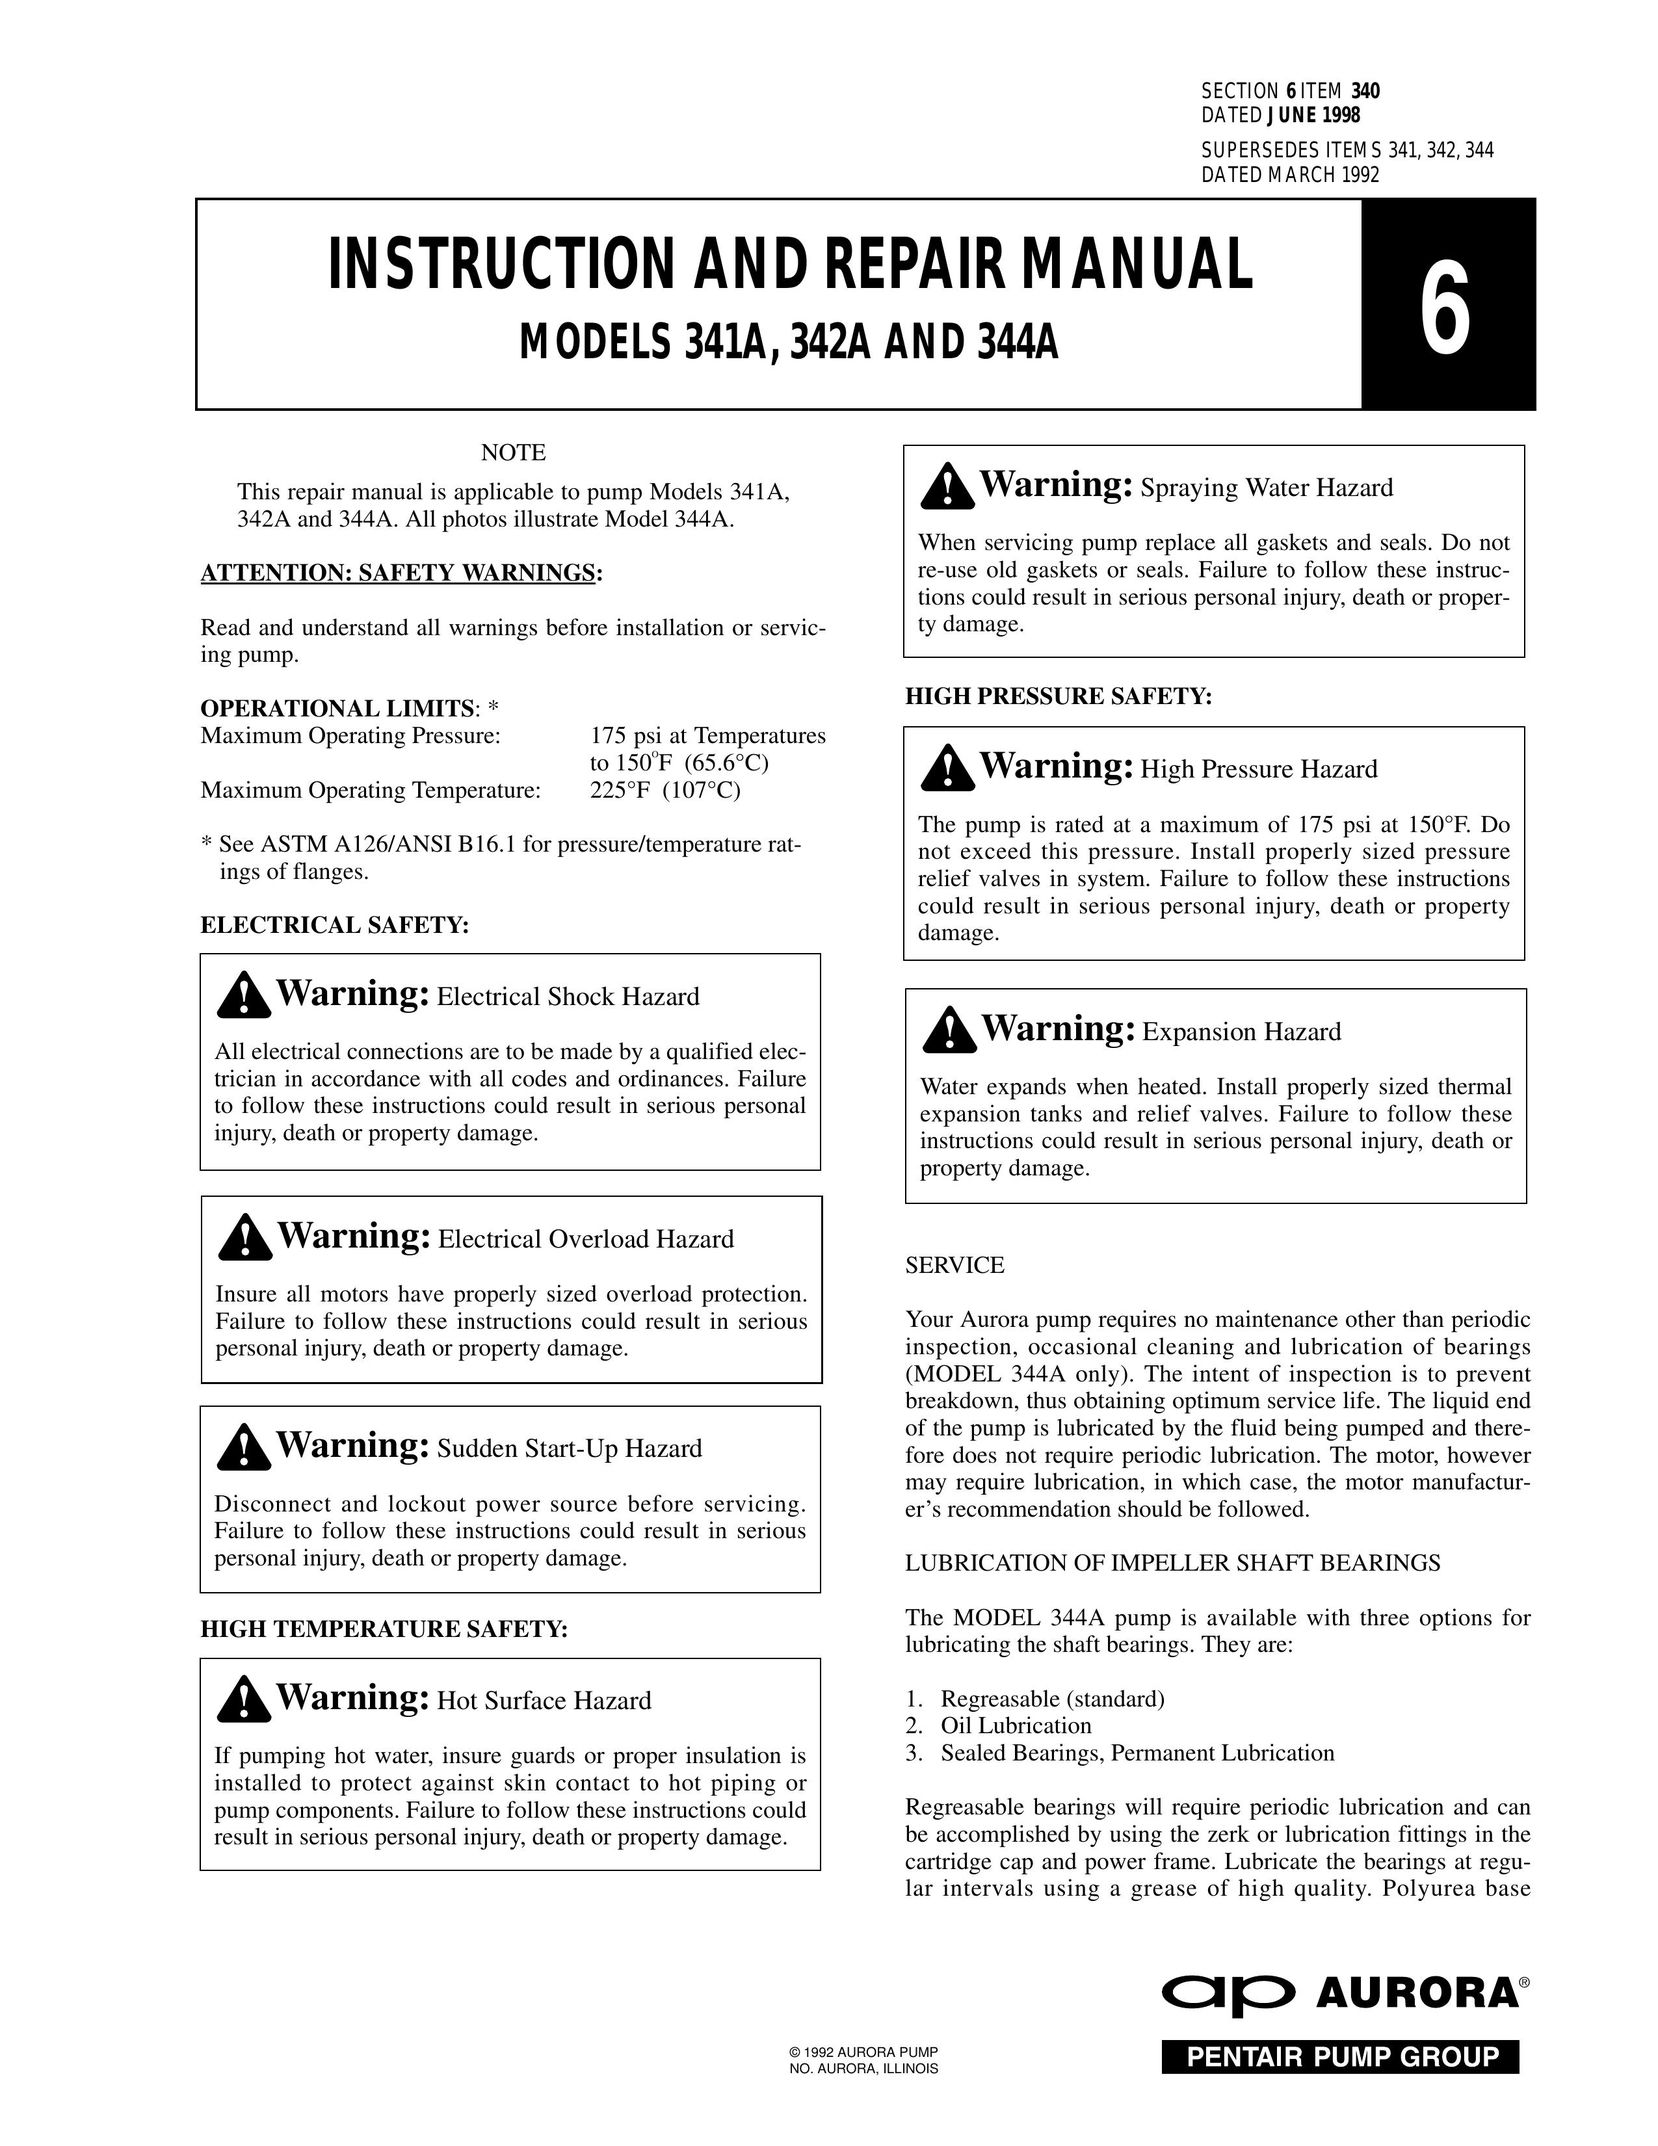 Aurora of America 341A Heat Pump User Manual